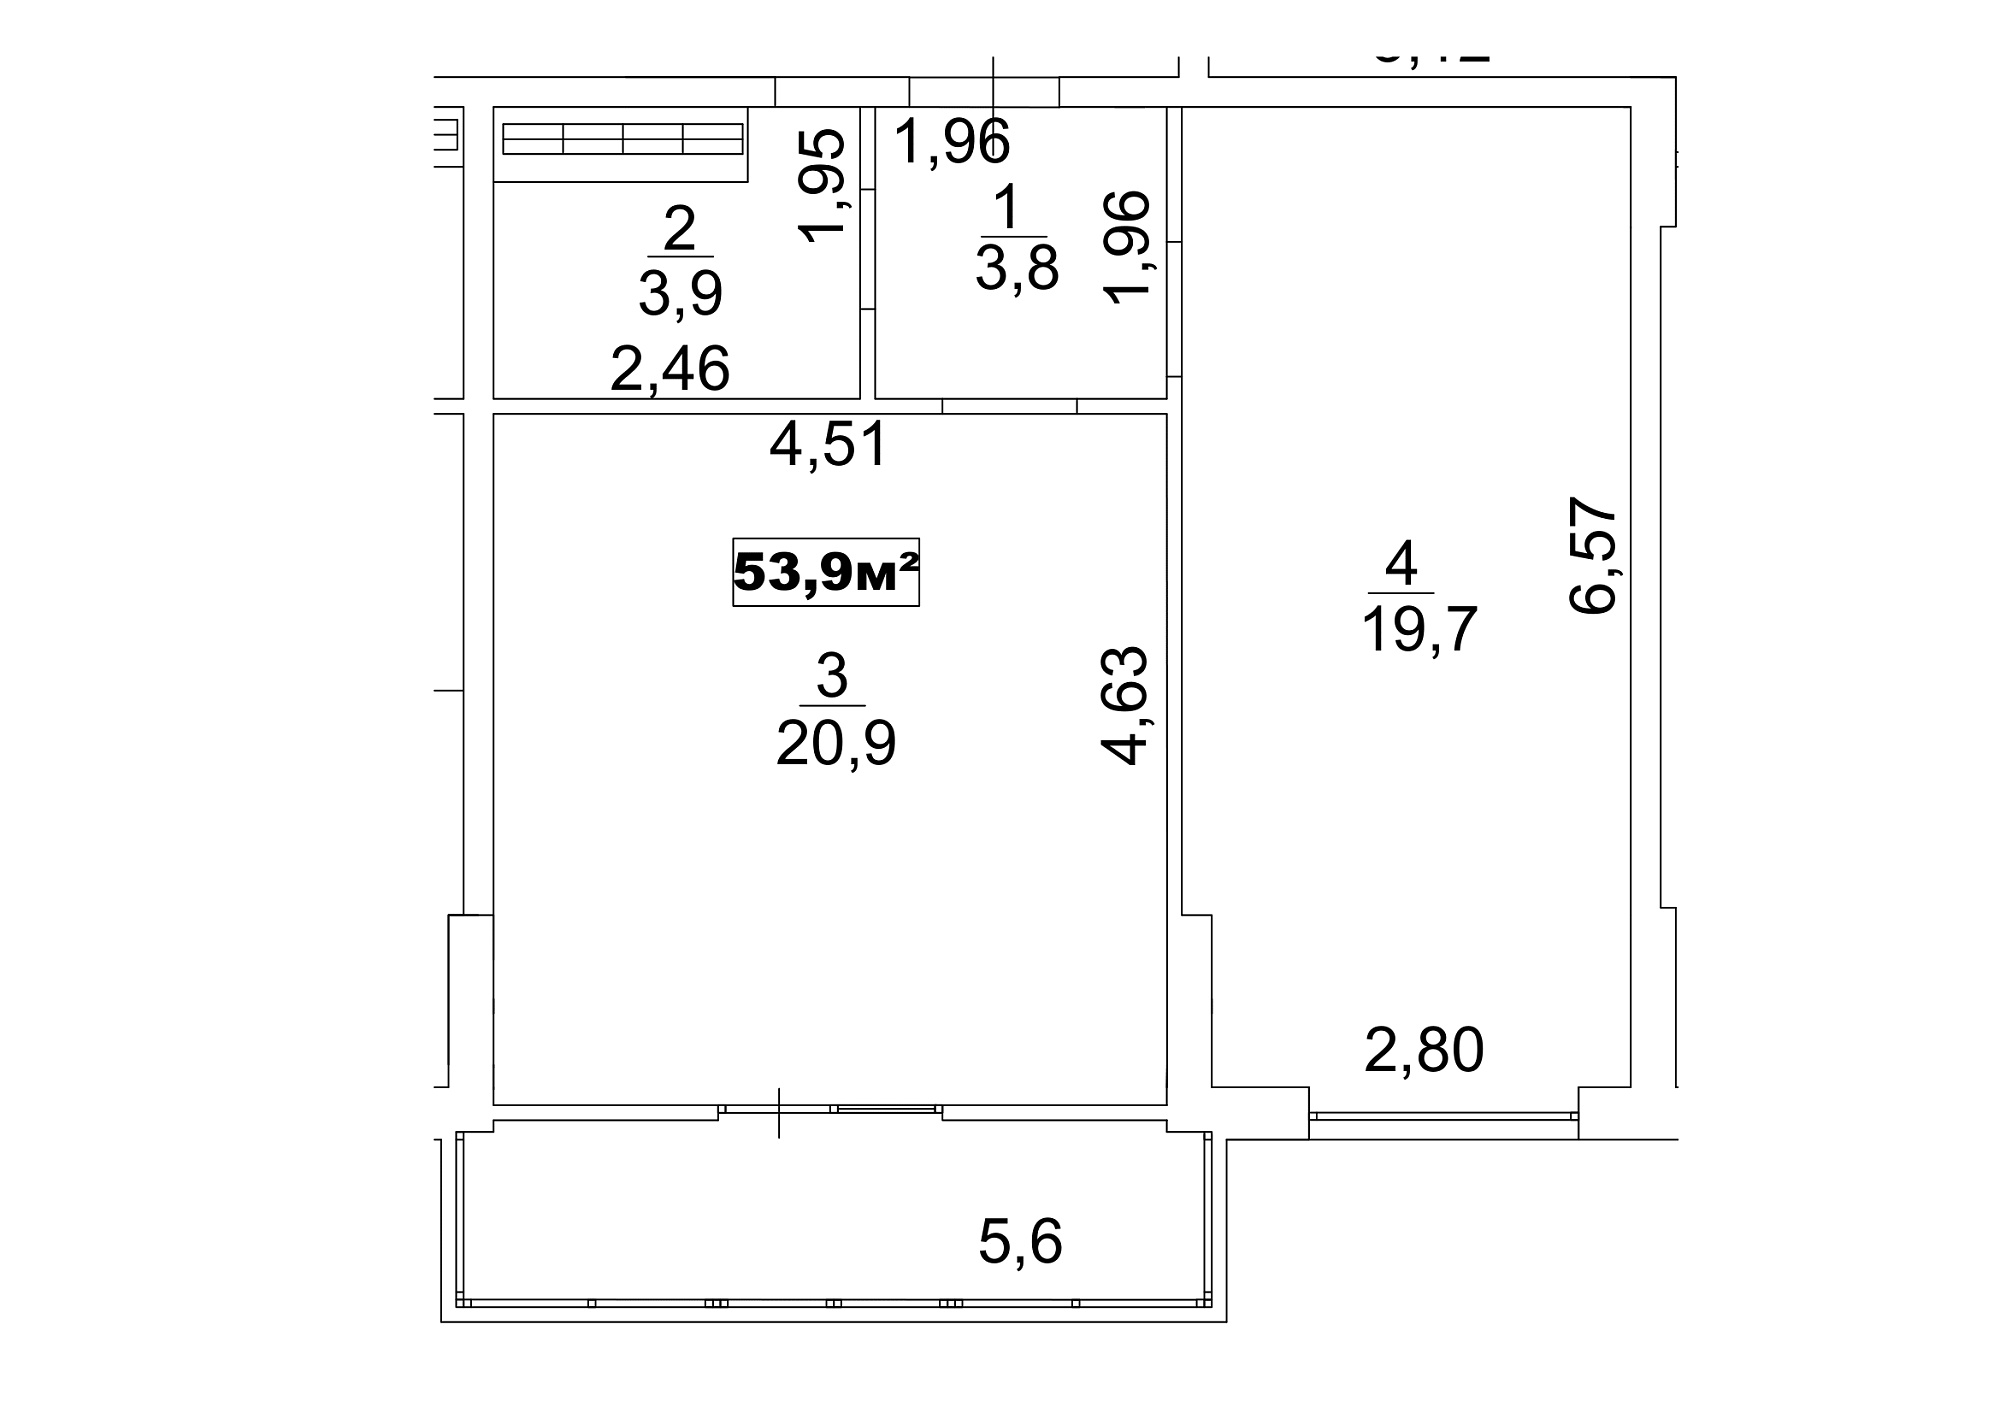 Планировка 1-к квартира площей 53.9м2, AB-13-06/00050.